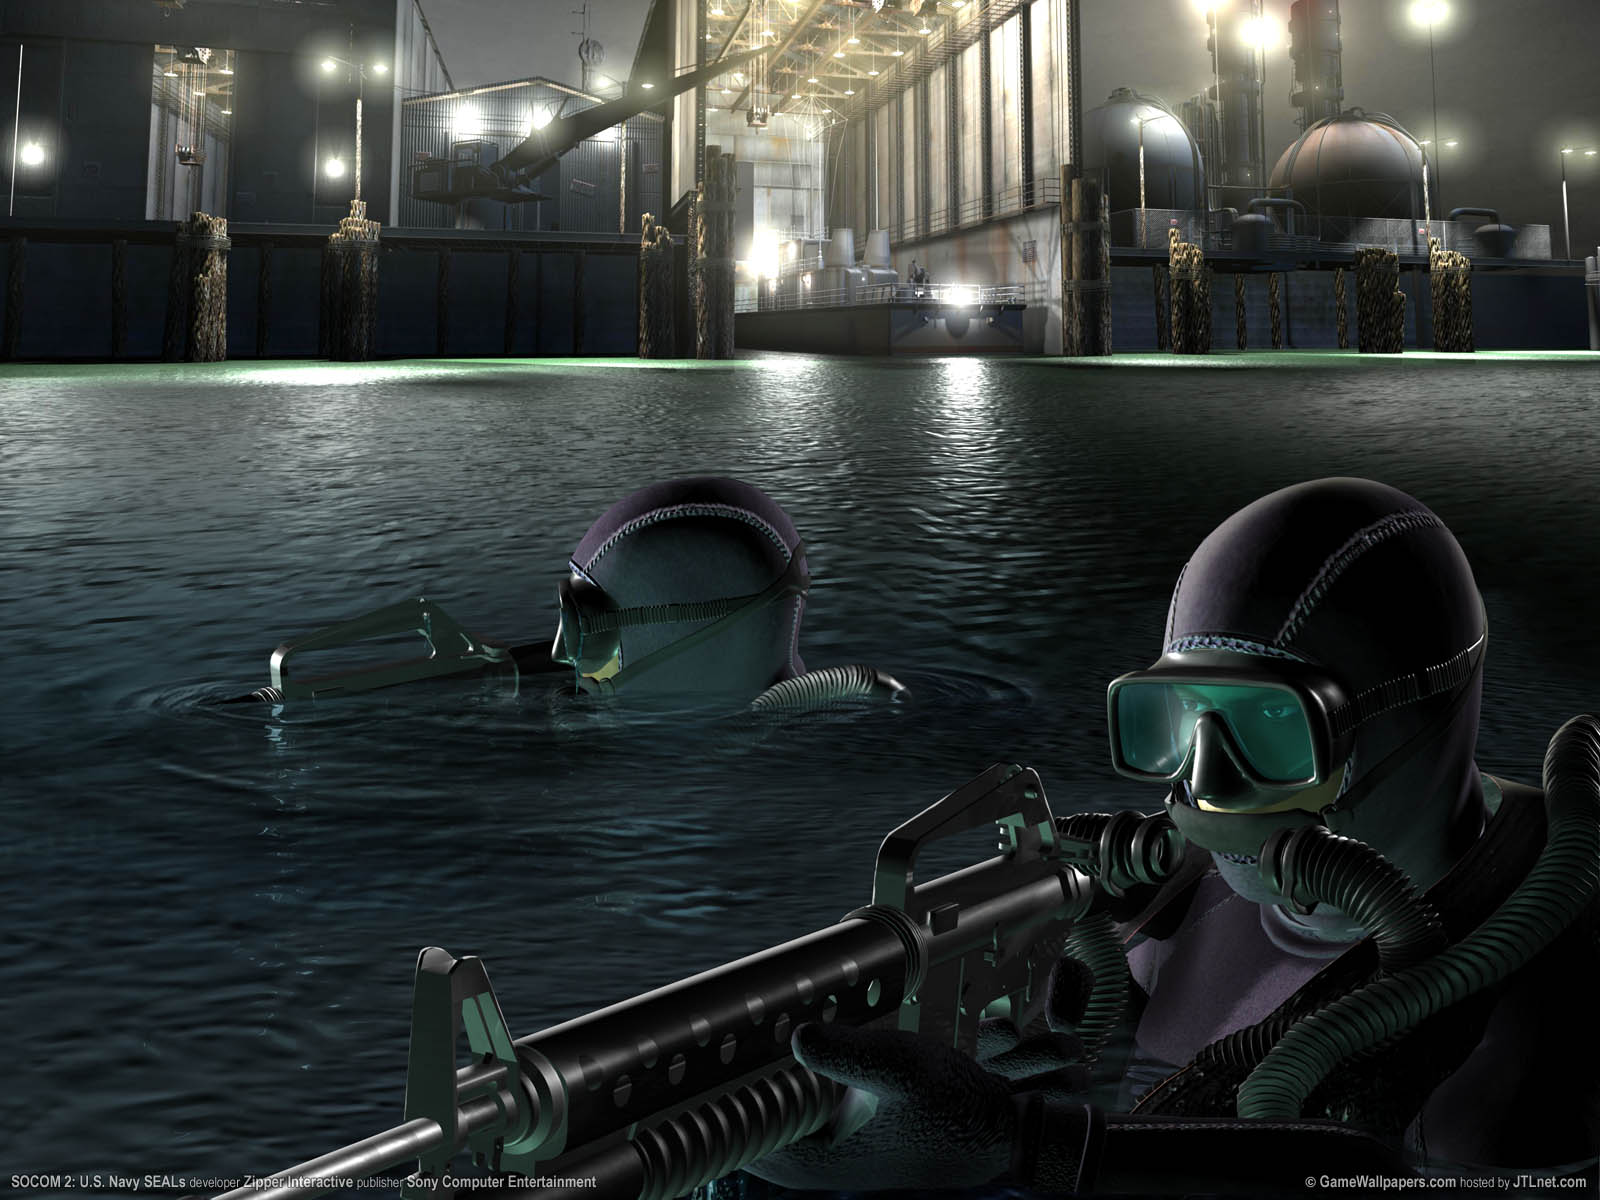 SOCOM 2: U.S. Navy SEALs fond d'cran 03 1600x1200